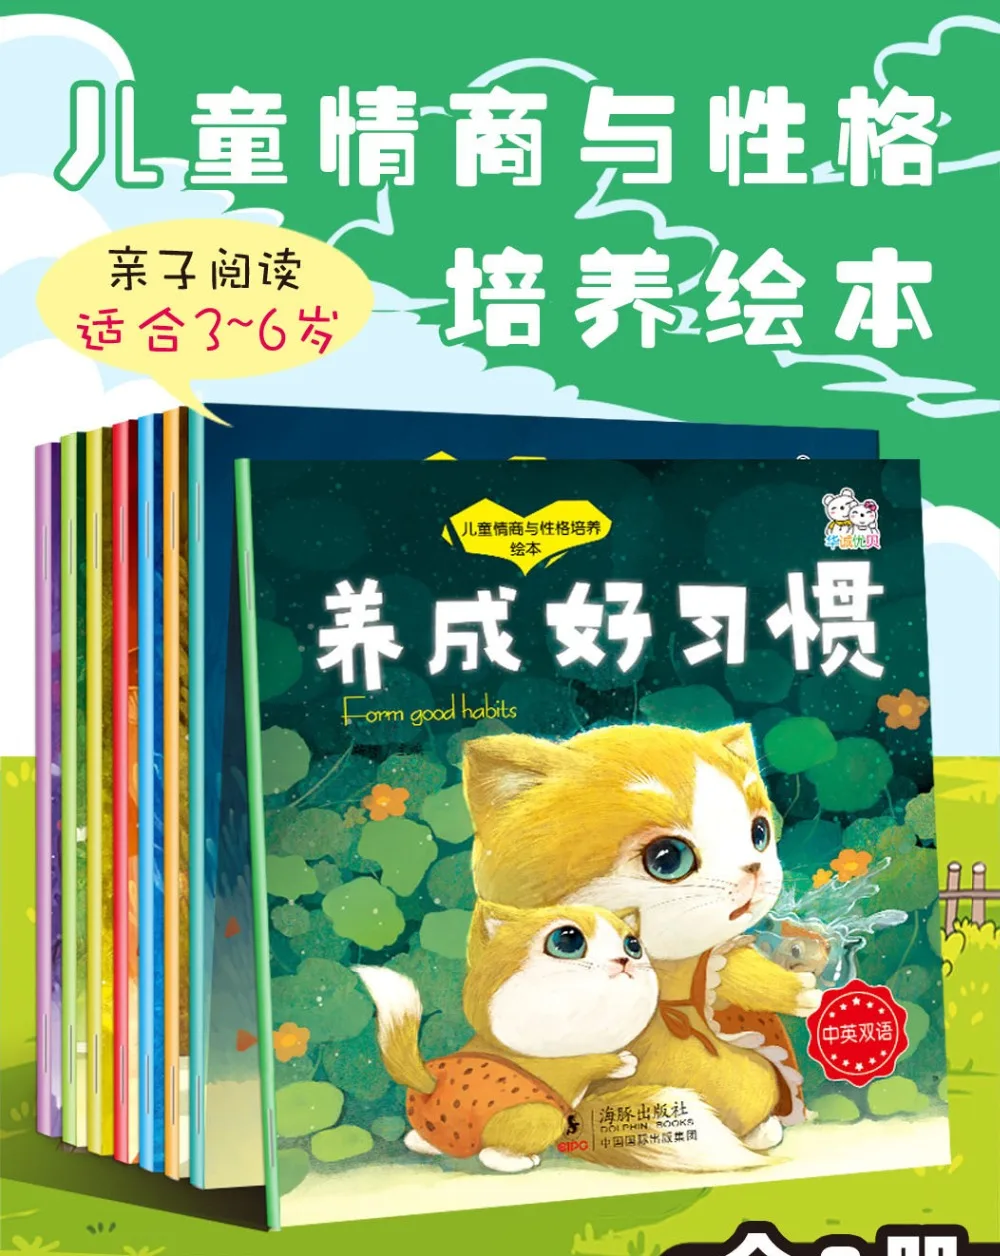 8 шт./компл. китайский и английский короткий рассказ книга для детей Детские развивают хорошее Babits картина книга для чтения на ночь От 0 до 6